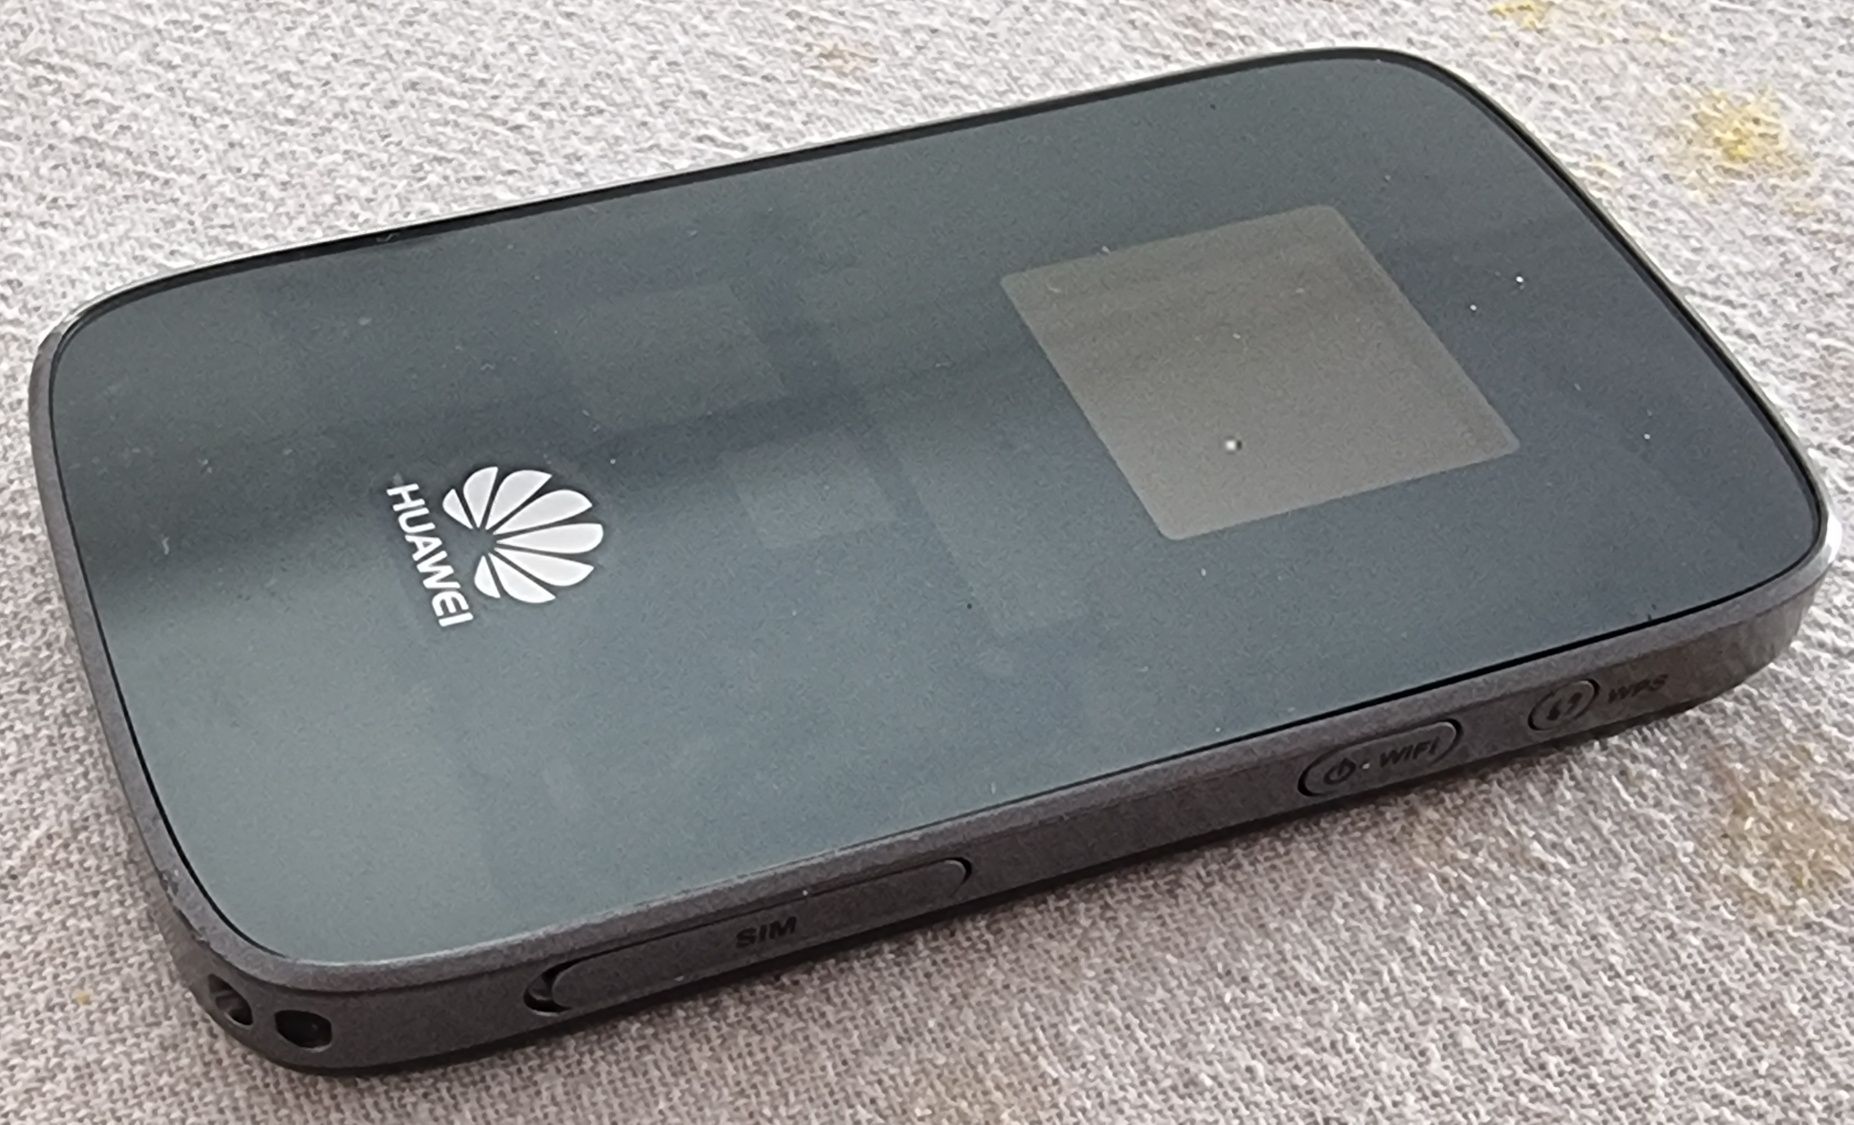 Hotspot Huawei Mobile Wi-Fi